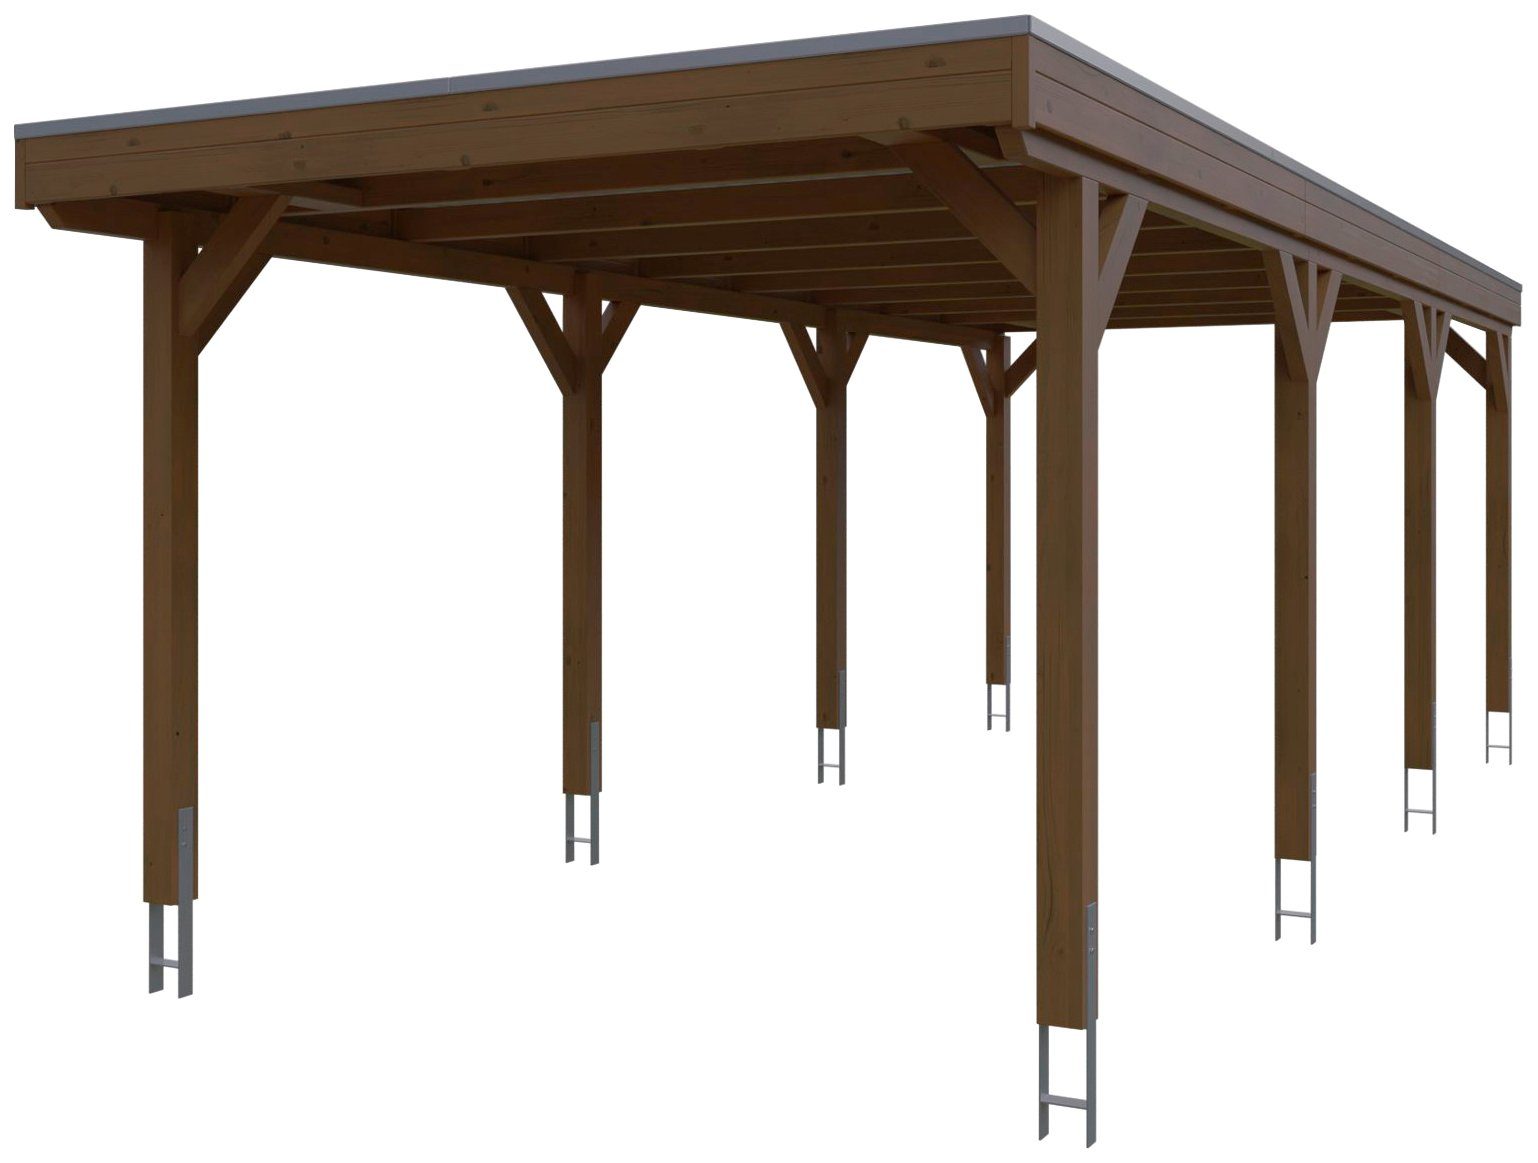 Skanholz Einzelcarport Grunewald, BxT: 321x796 cm, 289 cm Einfahrtshöhe,  mit Aluminiumdach, Flachdach mit Aluminium-Dachplatten, farblich behandelt  in nussbaum